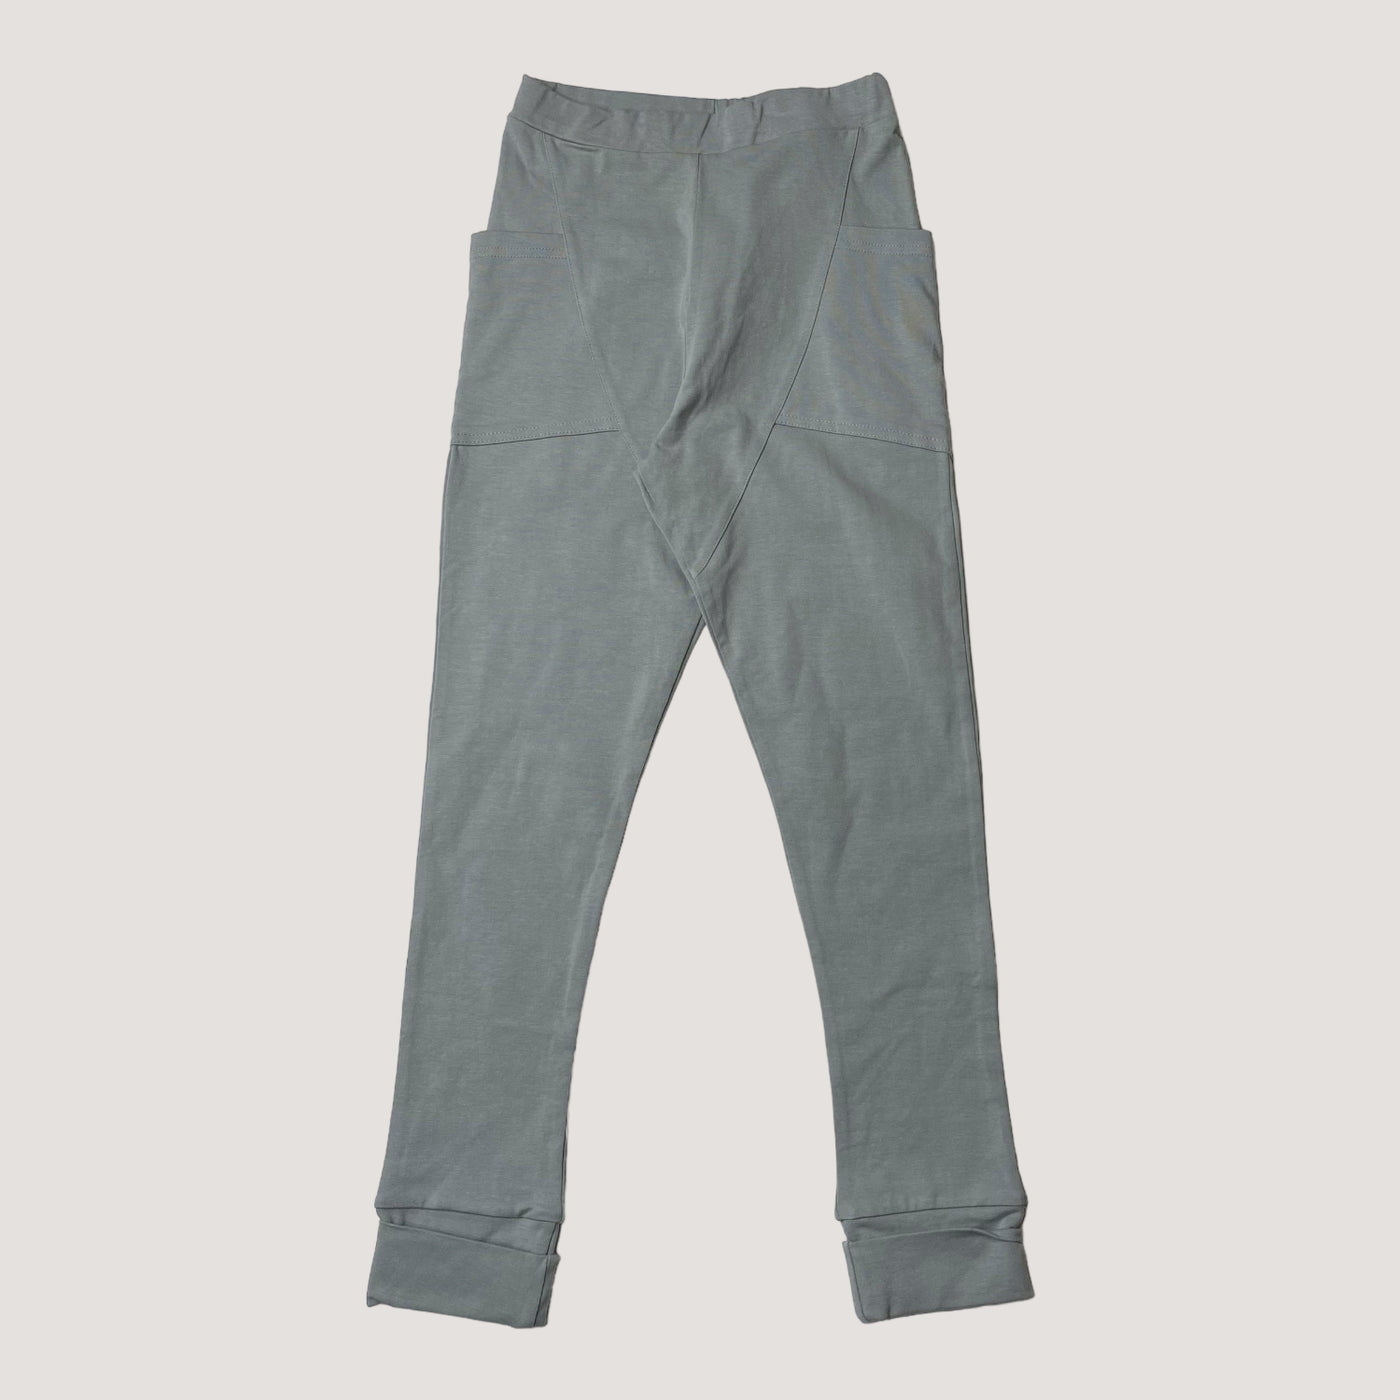 Gugguu pocket leggings, sage green | 134cm